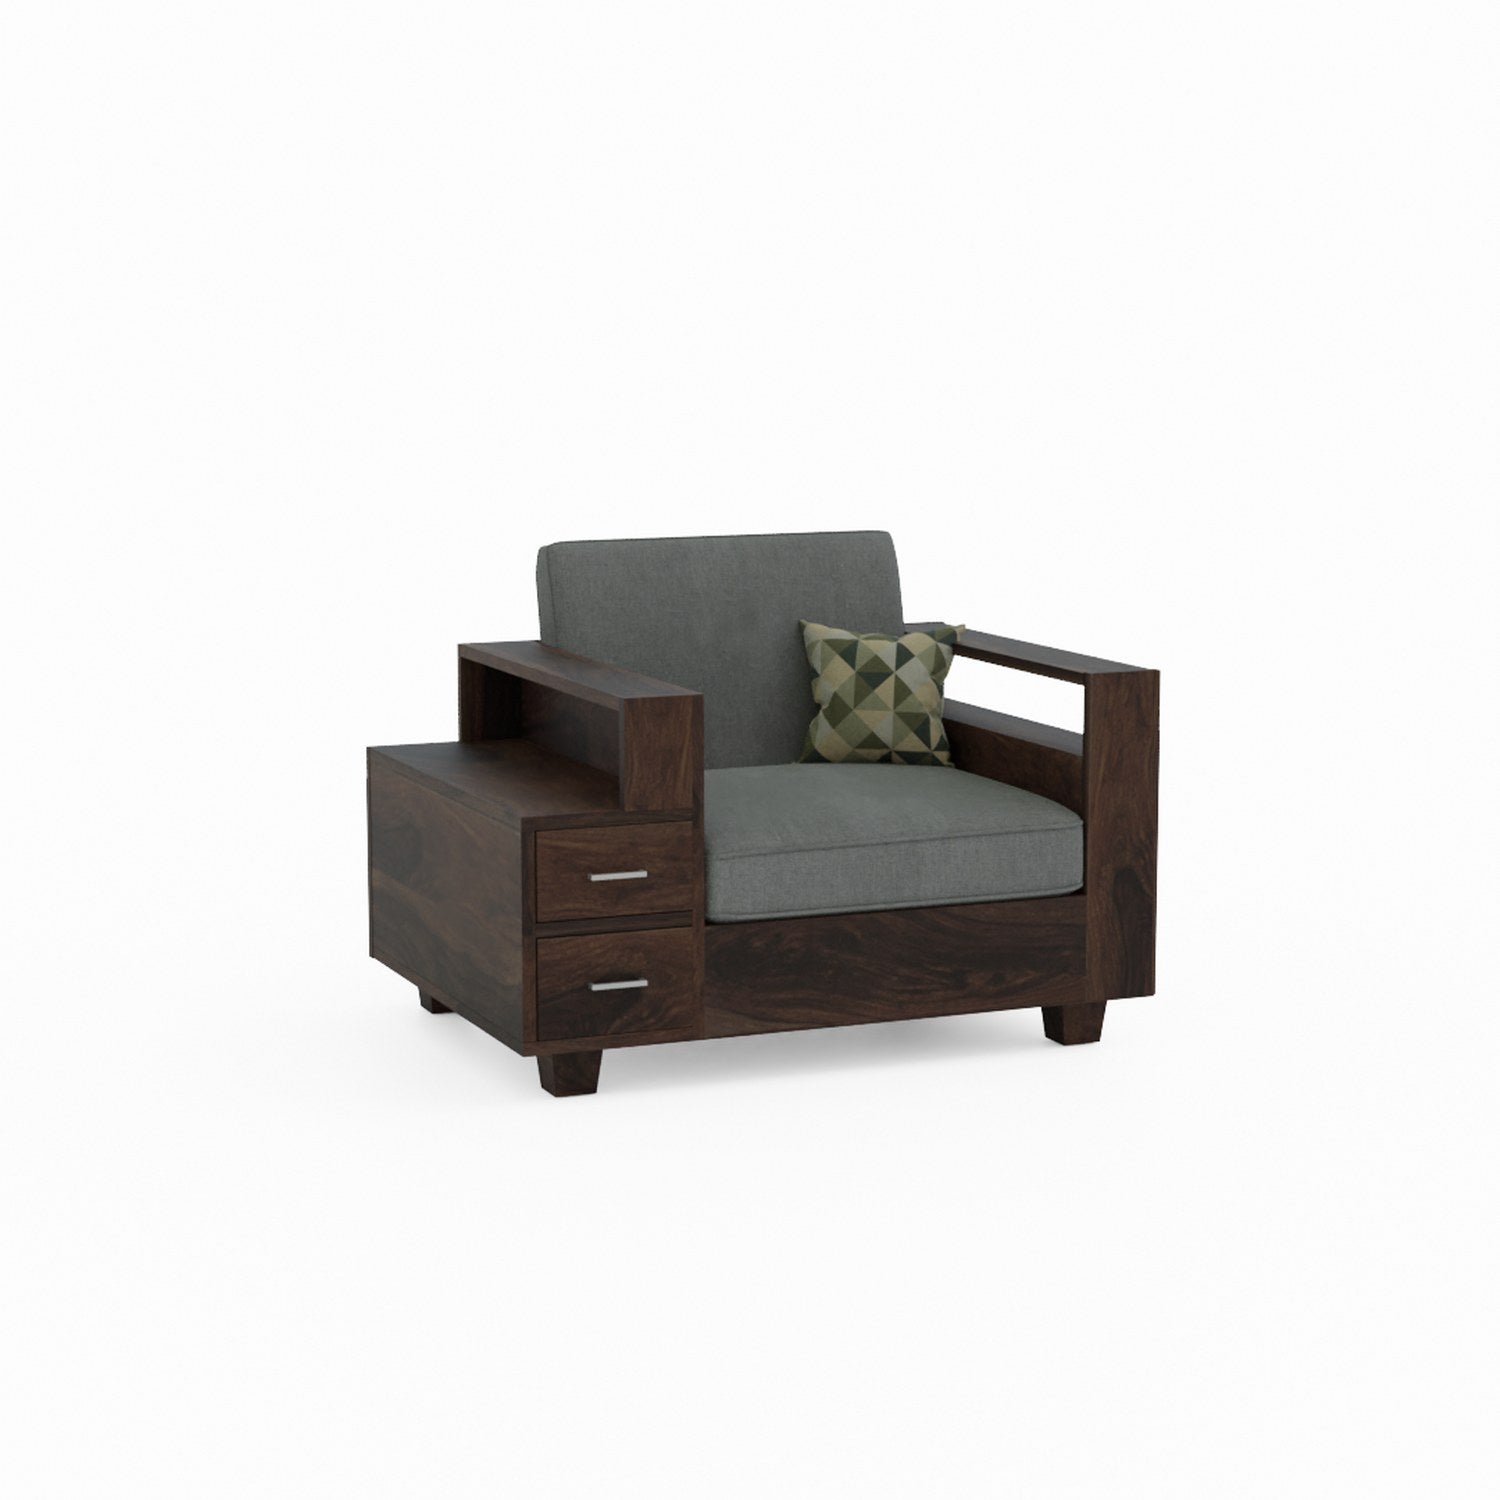 Woodora Solid Sheesham Wood 5 Seater Sofa Set  (3+1+1, Walnut Finish)